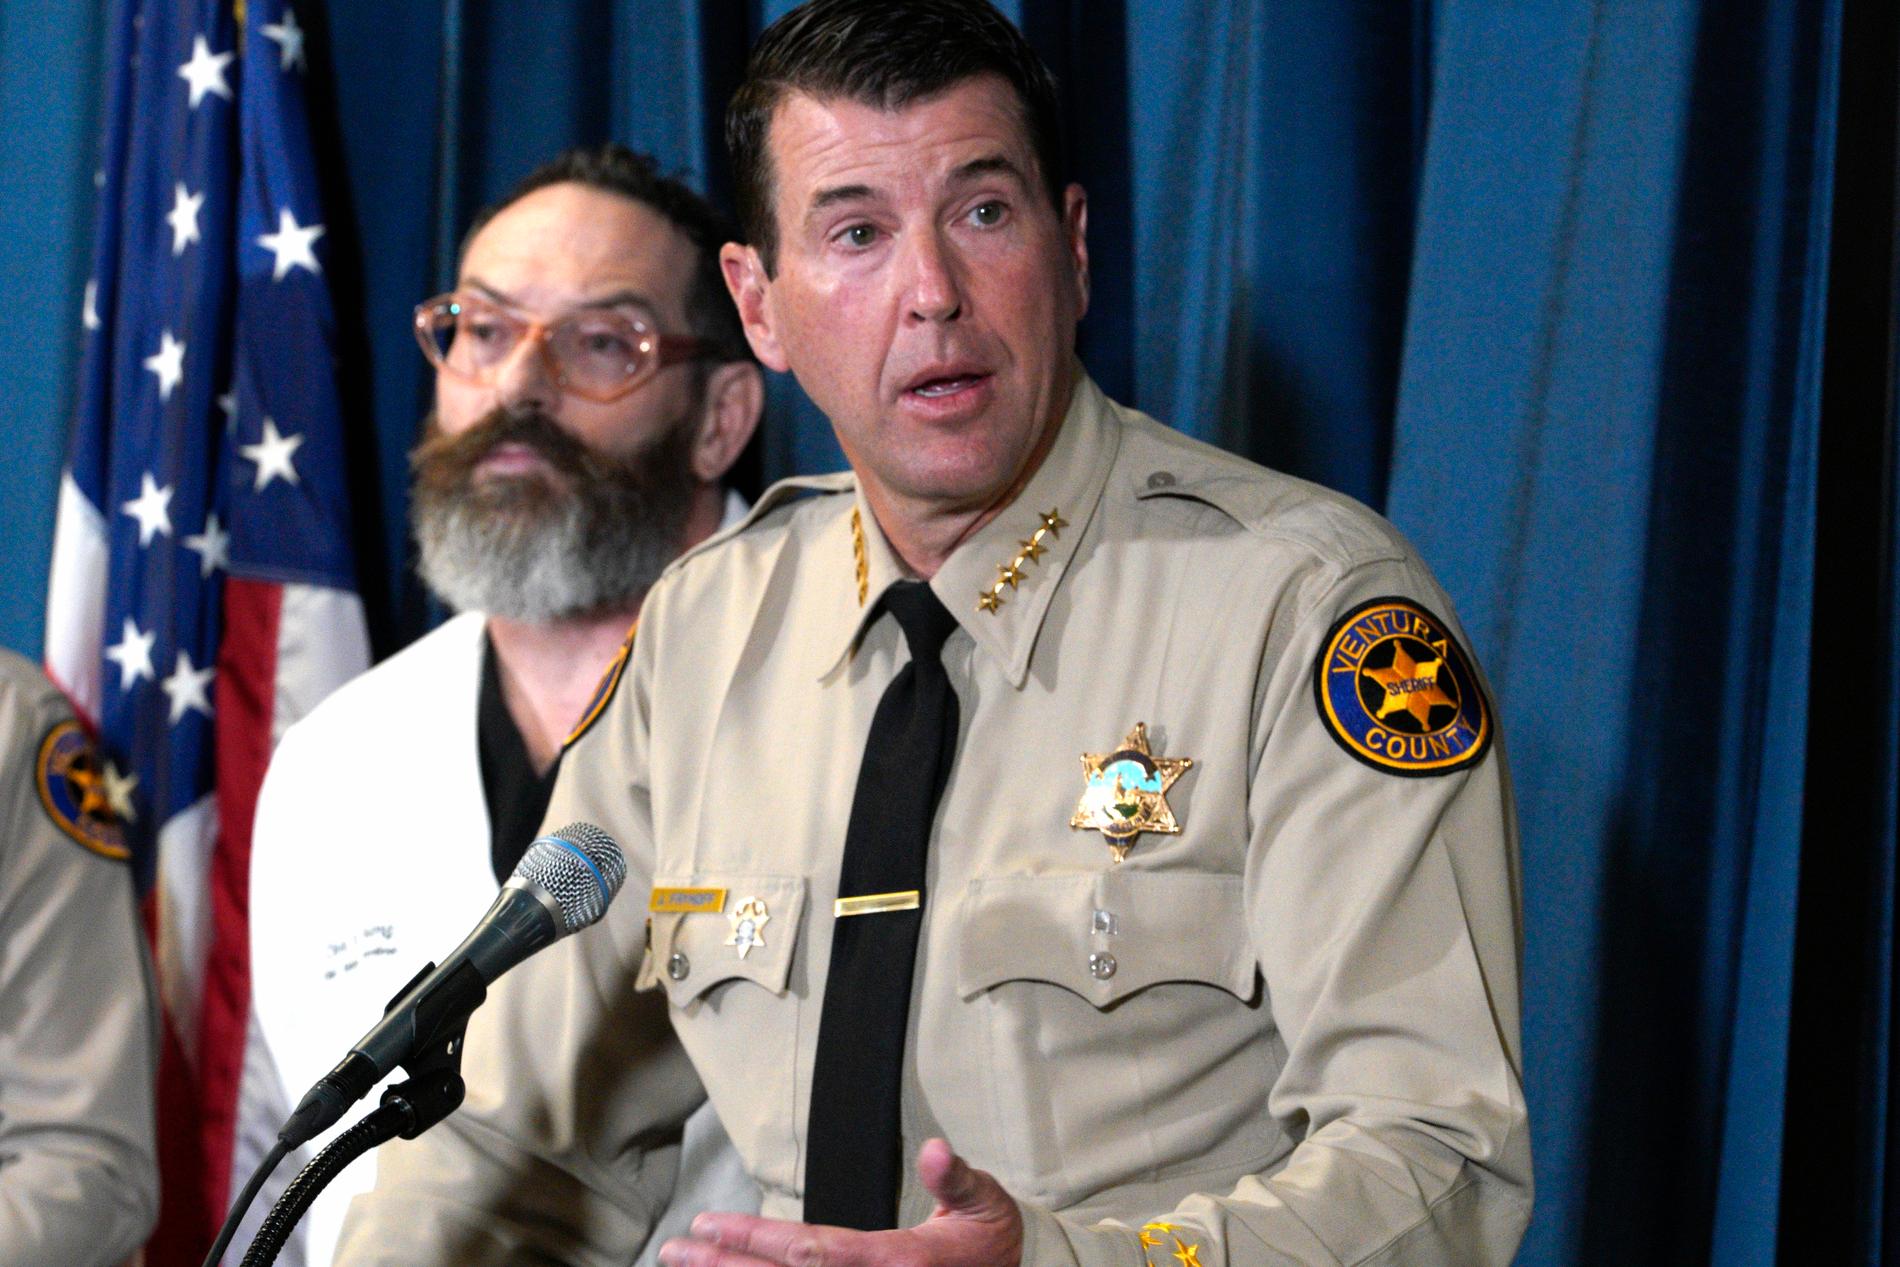 Polischef Jim Fryhoff meddelade under en pressträff att en person är misstänkt – men inte gripen. 